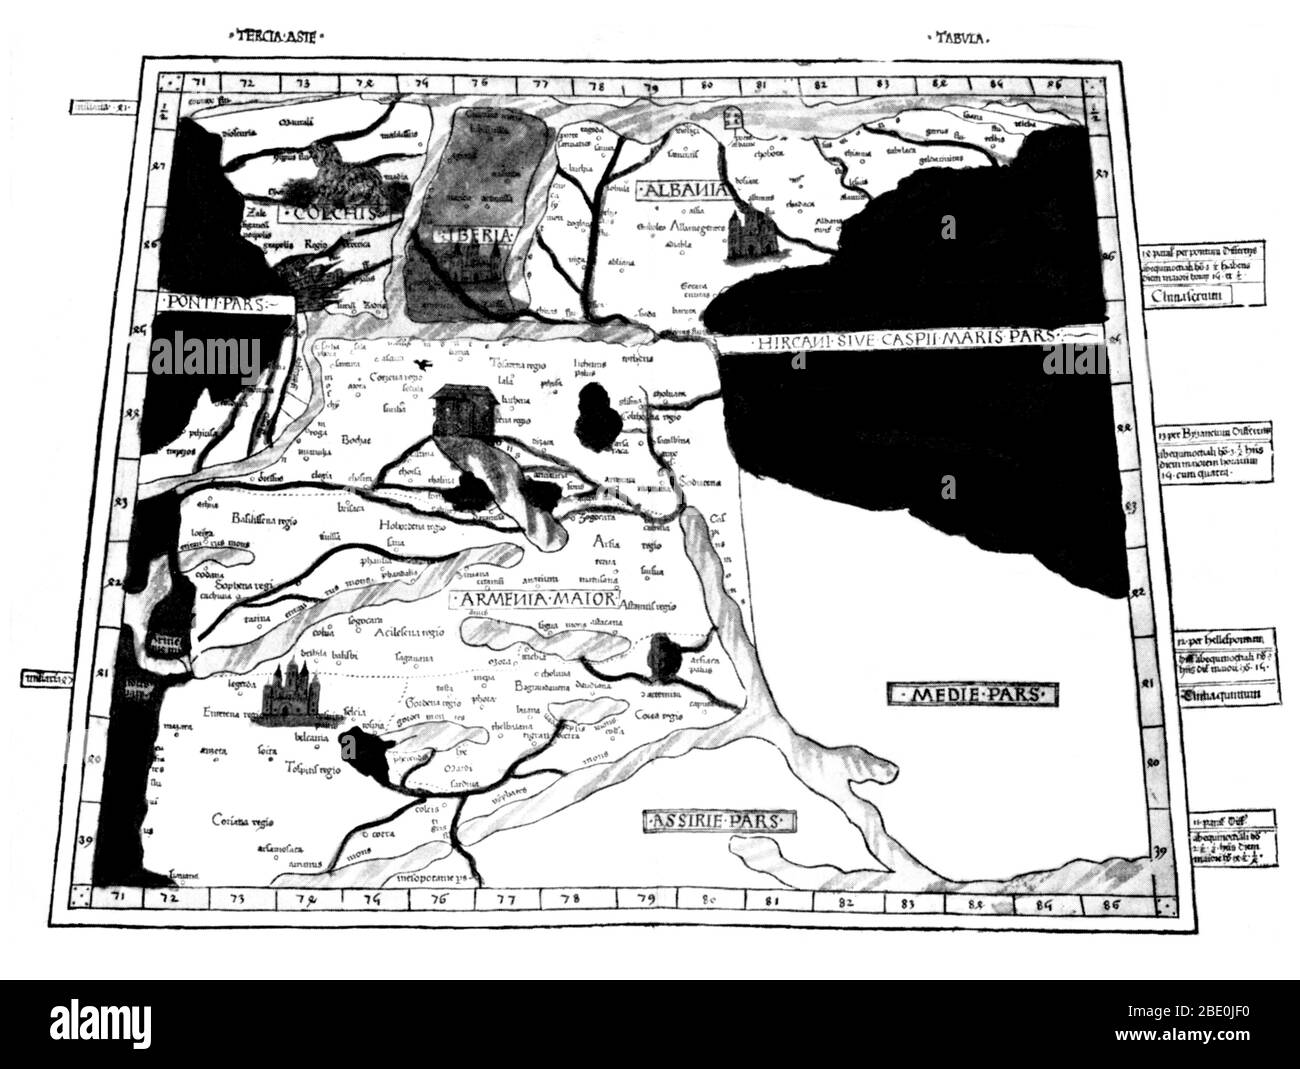 La carte de Ptolémée d'Arménie avec l'arche de Noé sur le mont Ararat a été basée sur la description figurant dans le livre de Ptolémée Geographia, écrit 150 AD. Bien que les cartes authentiques n'ont jamais été trouvés, la Geographia contient des milliers de références à diverses parties de l'ancien monde, avec des coordonnées pour la plupart, ce qui a permis de reconstruire les cartographes du monde de Ptolémée vue lorsque le manuscrit a été re-découvert autour de 1300 AD. Peut-être la contribution la plus importante de Ptolémée et de ses cartes est le premier utilise des lignes de longitude et de latitude et la détermination des emplacements terrestres par celestial obse Banque D'Images